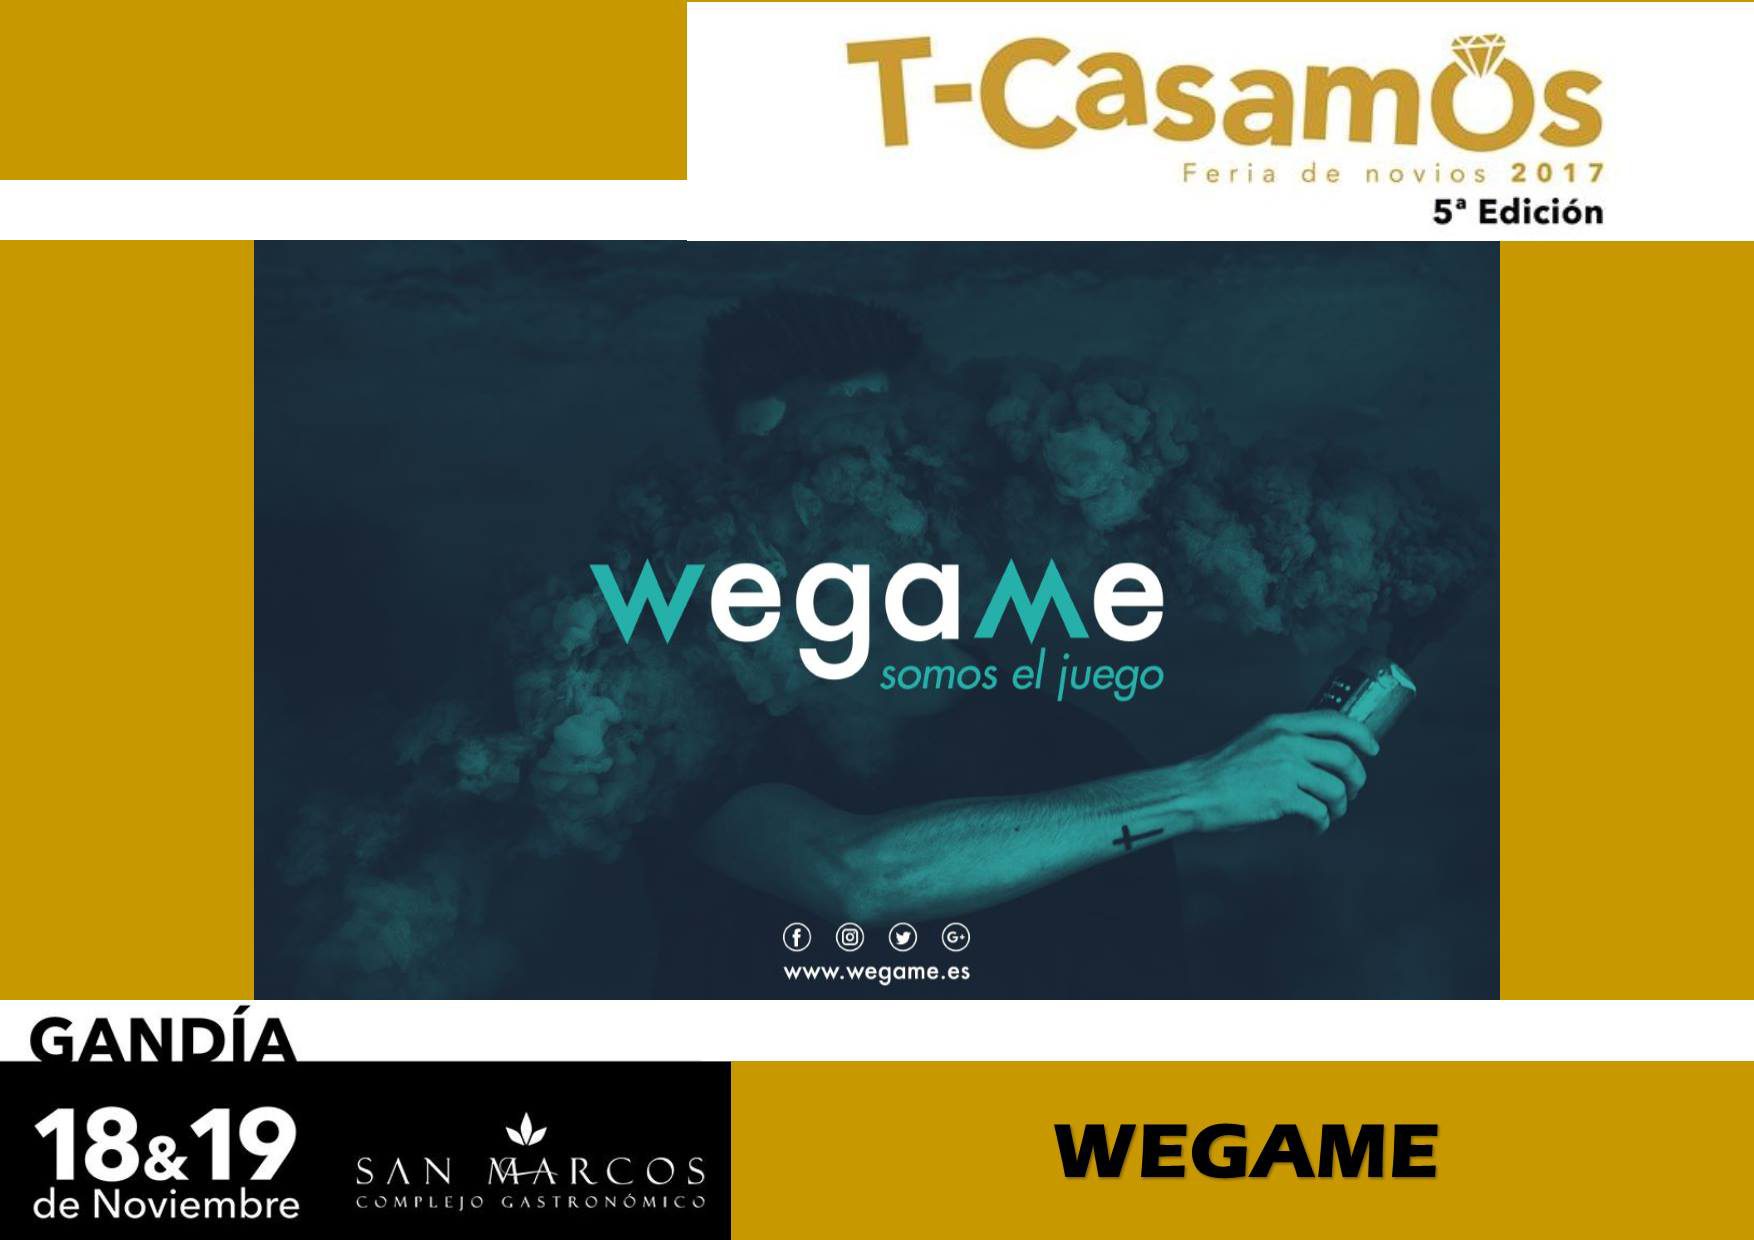 Wegame estará presente en la Feria T-Casamos (Gandía)